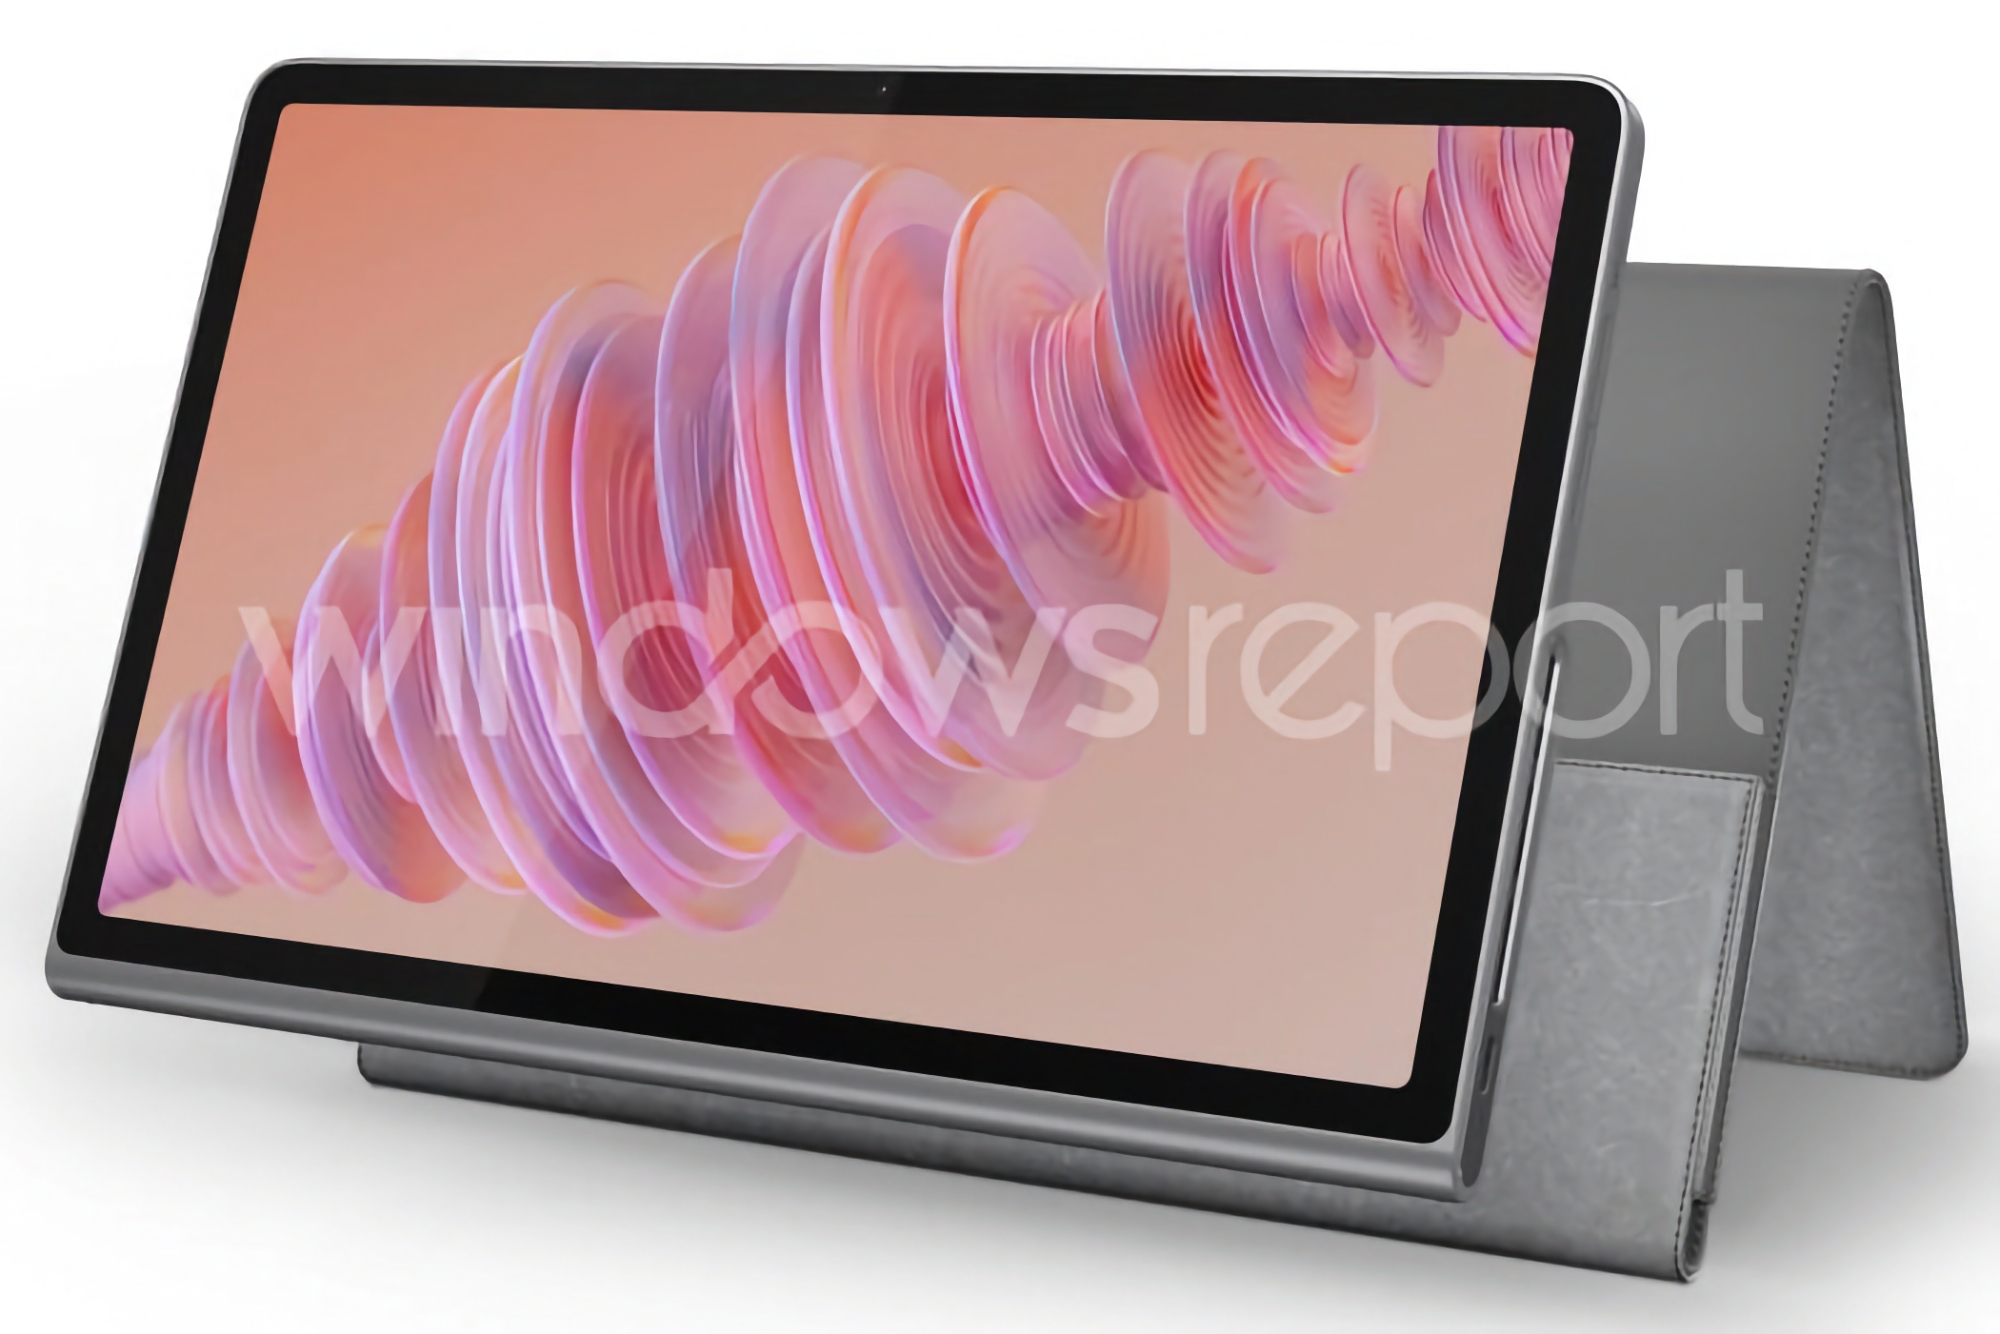 Lenovo s'apprête à commercialiser une tablette Tab Plus dotée d'un support intégré et de haut-parleurs stéréo